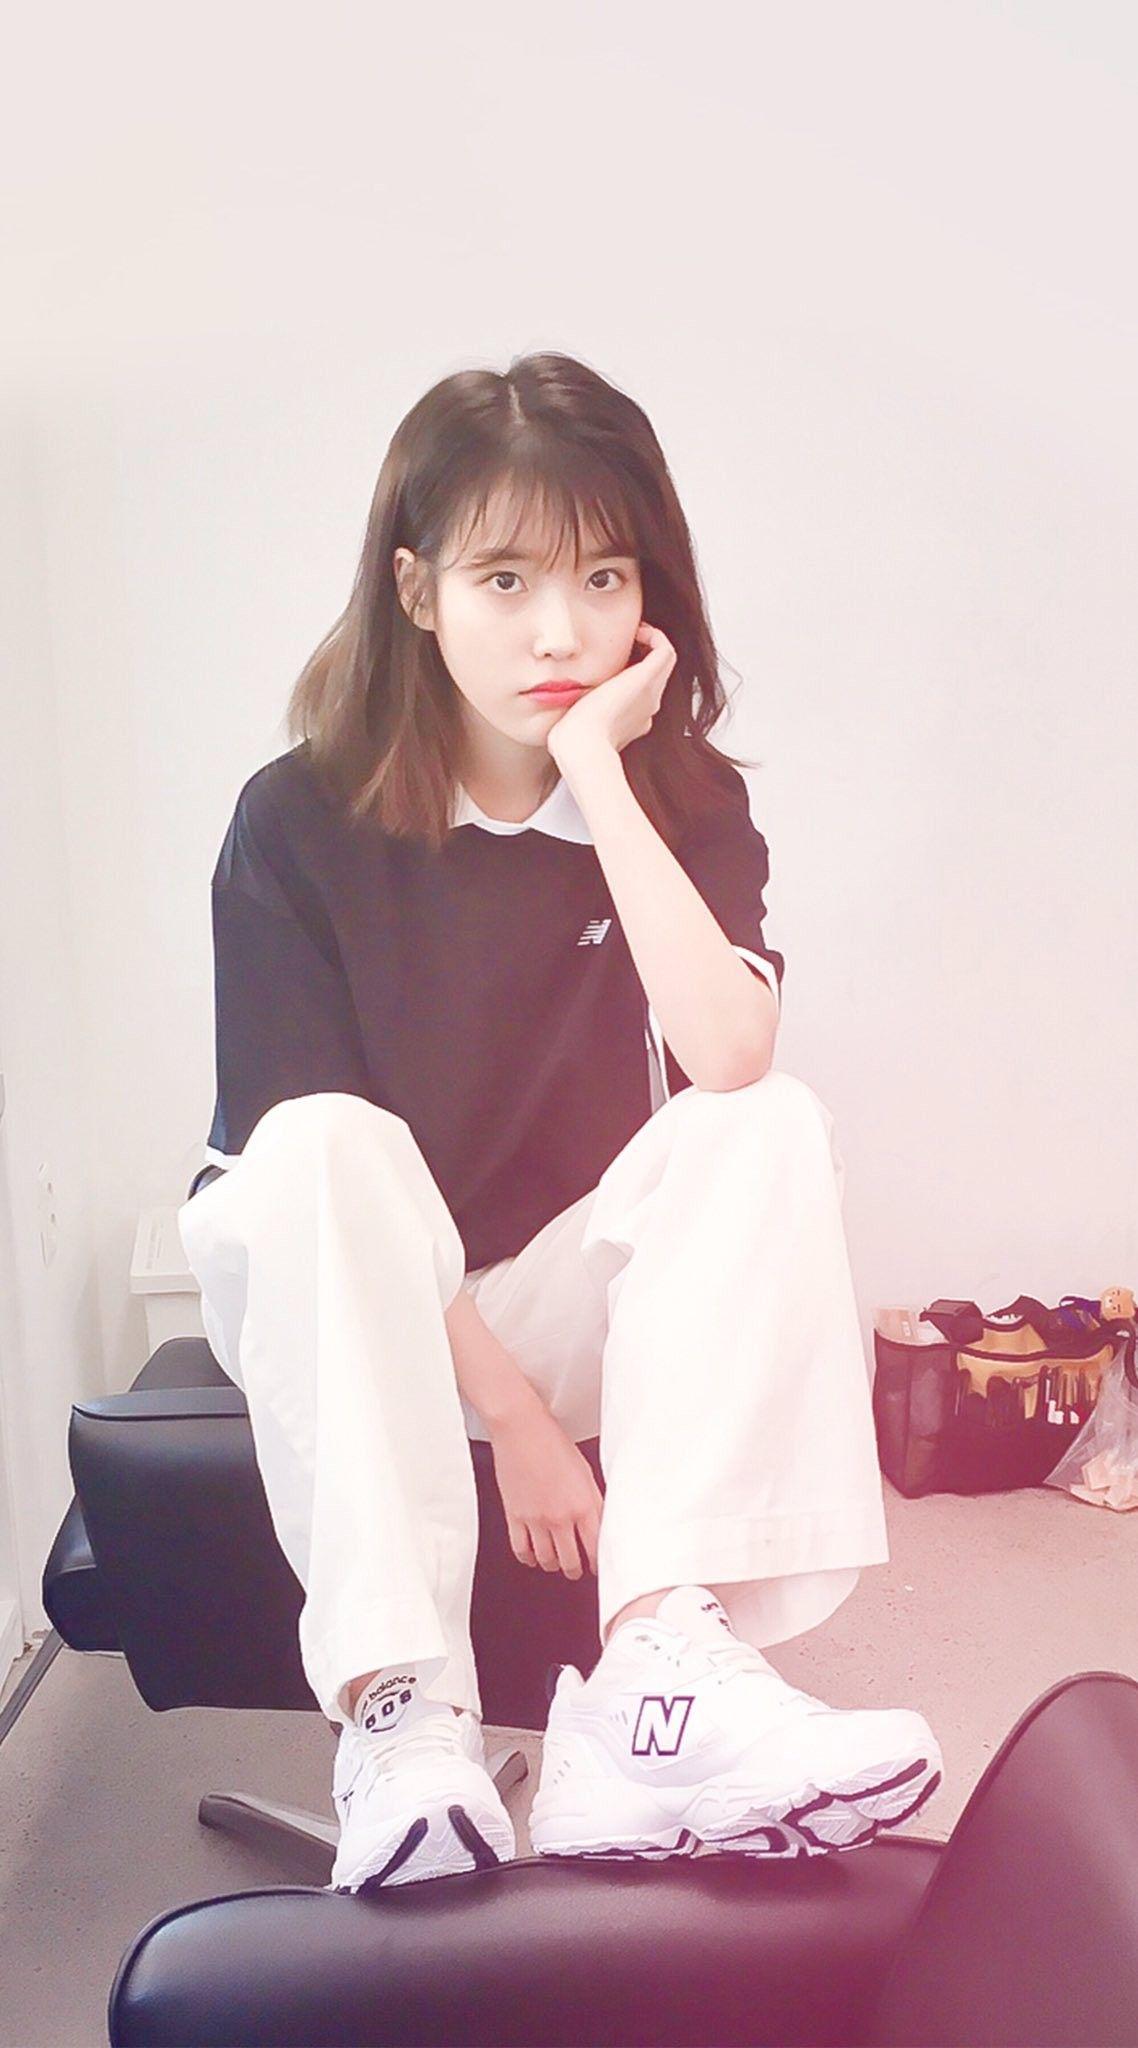 IU #wallpaper #dlwlrma. Kpop girls, Korean outfits